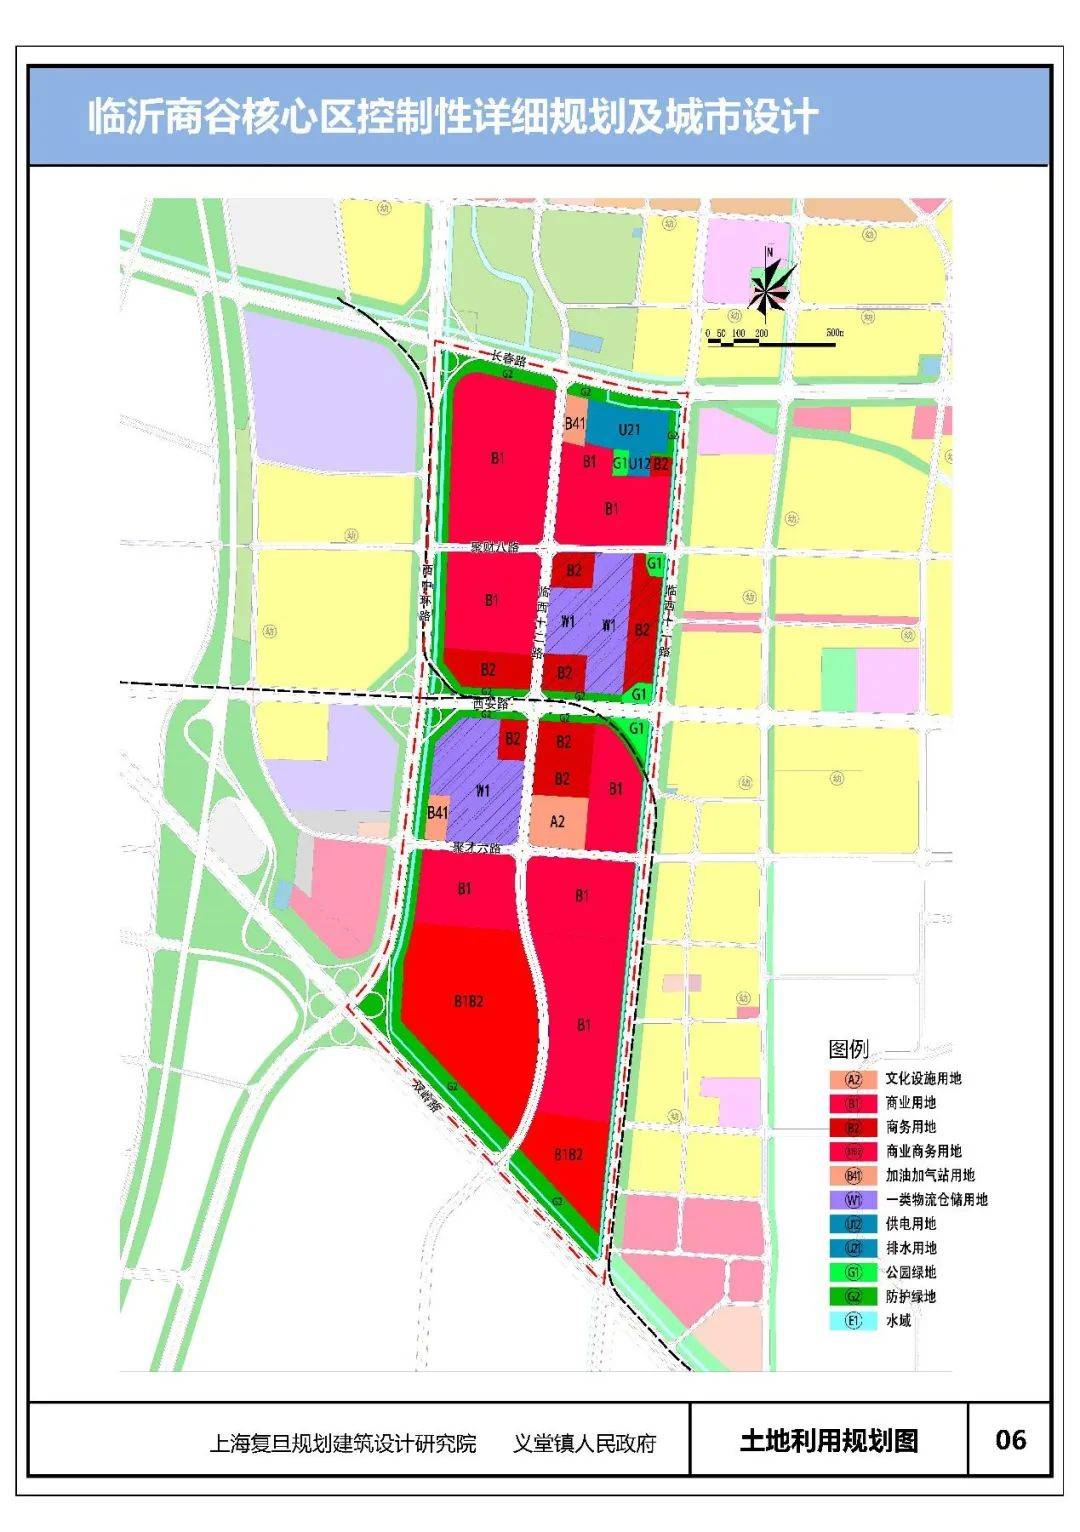 西城明珠规划来了临沂商谷核心区要崛起